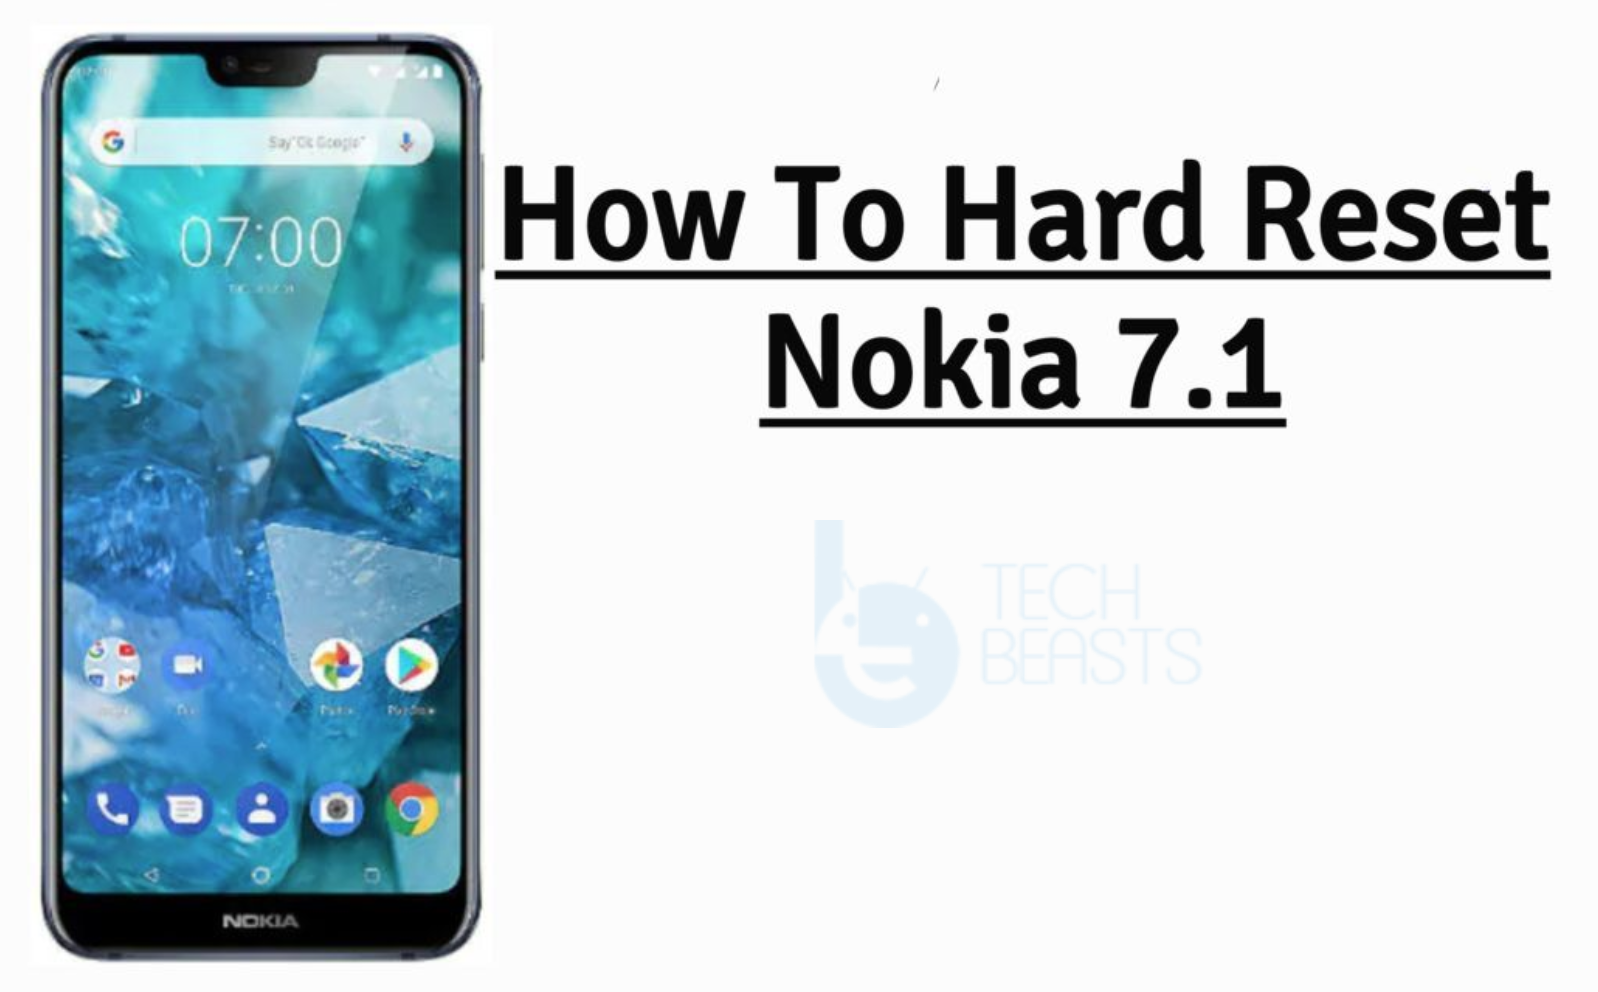 Hard Reset Nokia 7.1